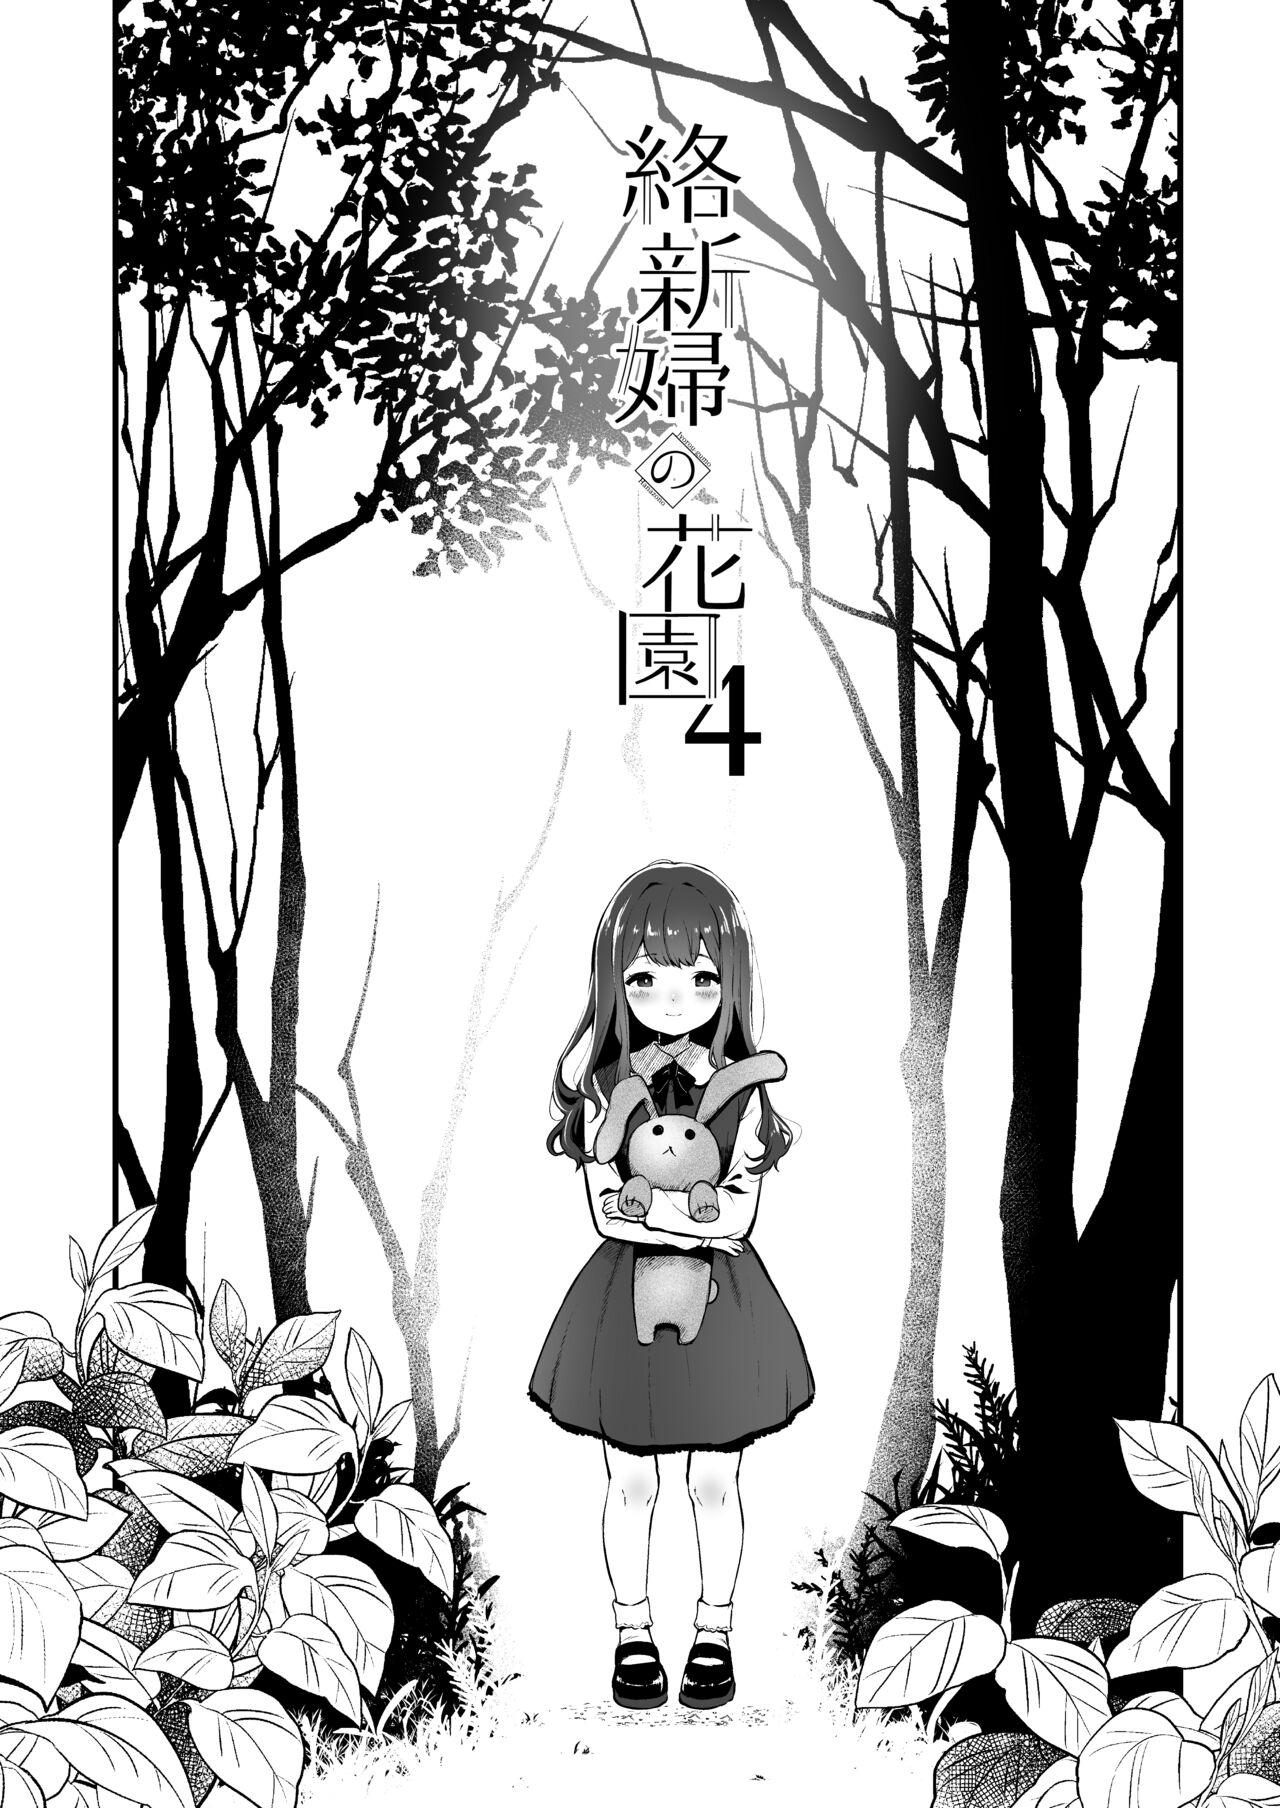 Spa Jorougumo no Hanazono 4 - Original Freak - Page 3